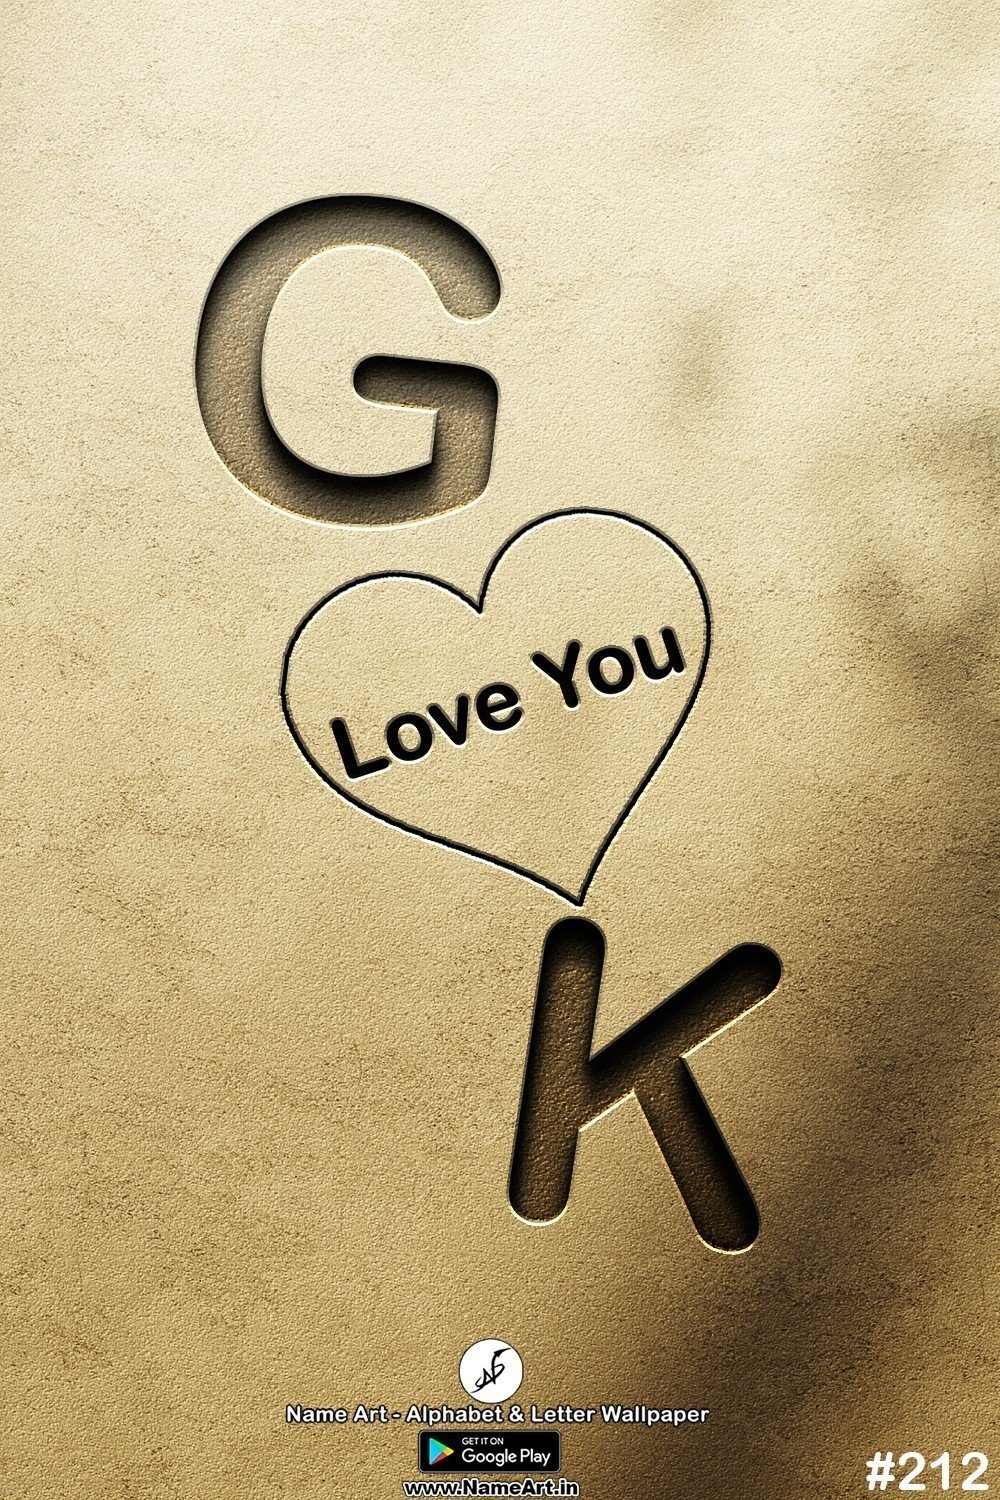 GK | Whatsapp Status DP GK | GK Love Status Cute Couple Whatsapp Status DP !! | New Whatsapp Status DP GK Images |